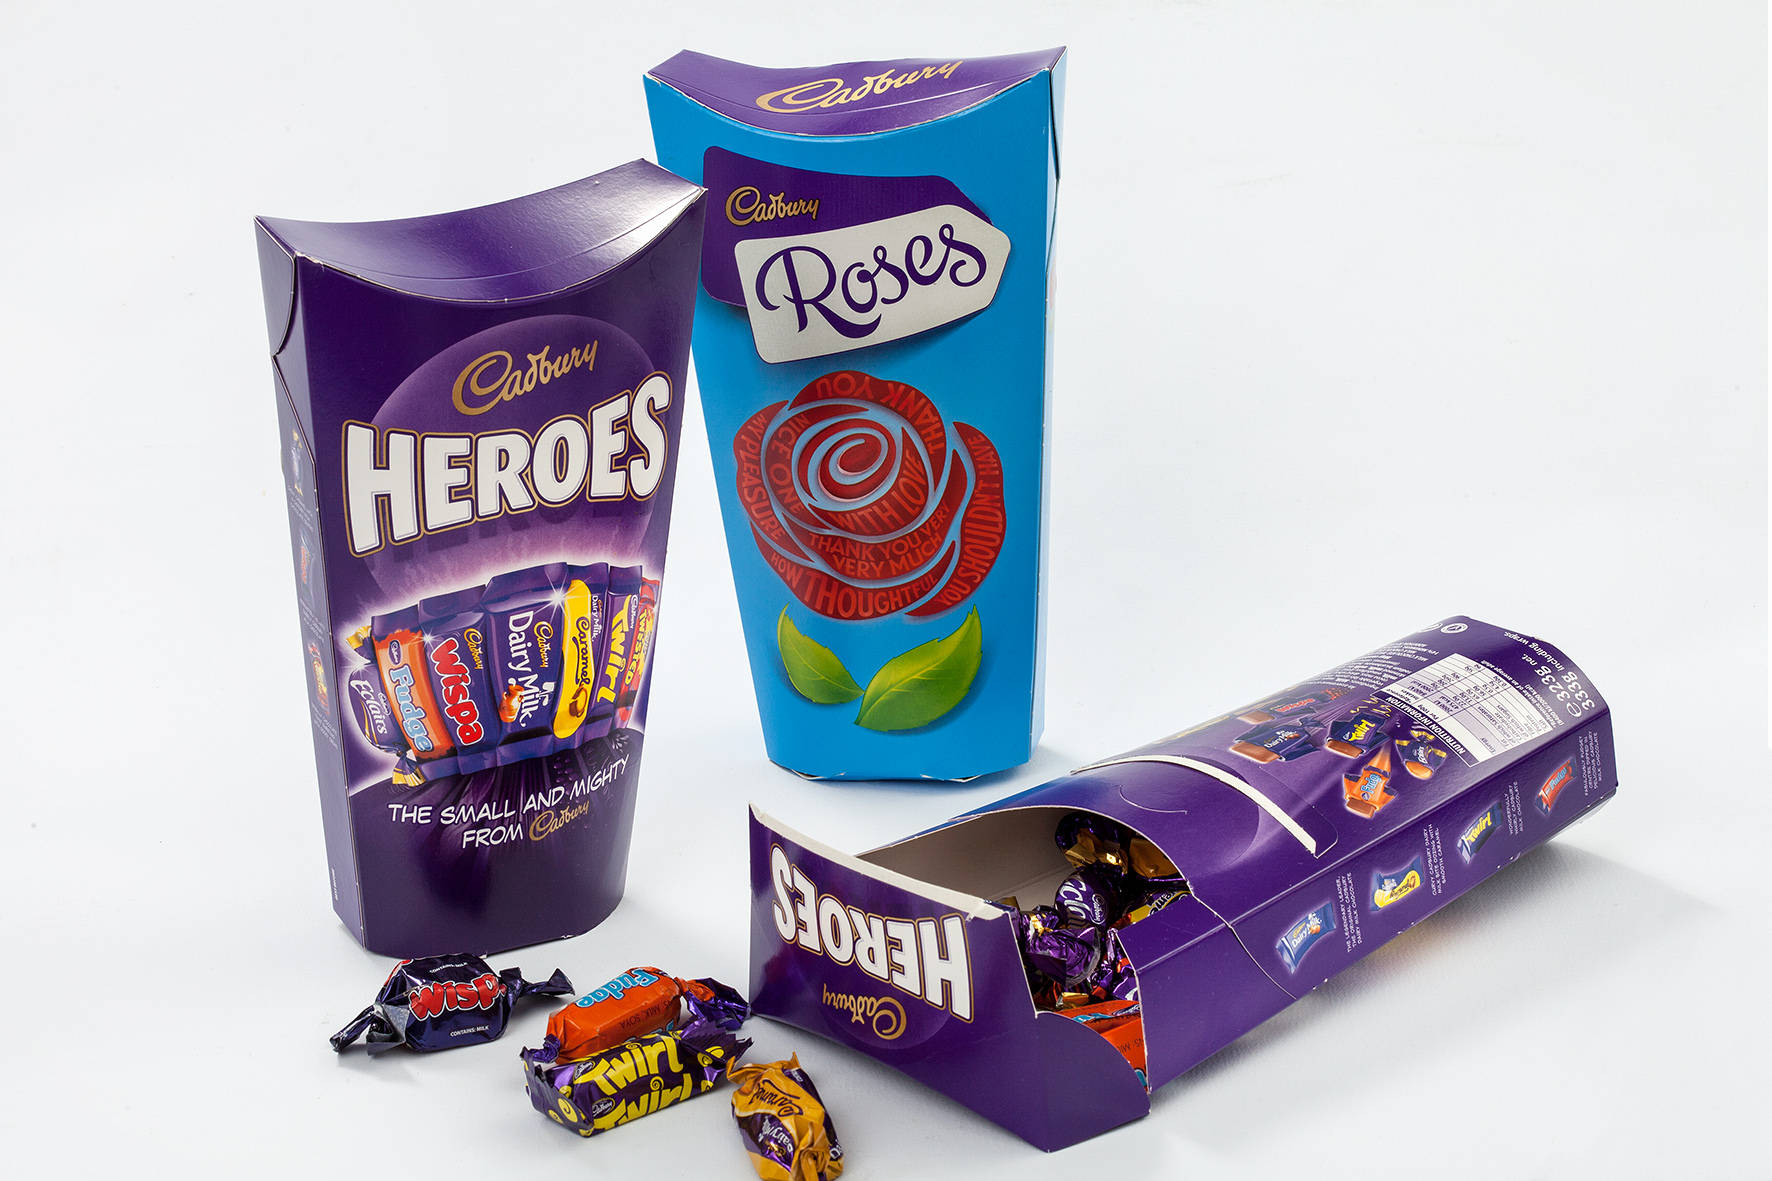 Cadbury Heroes & Roses